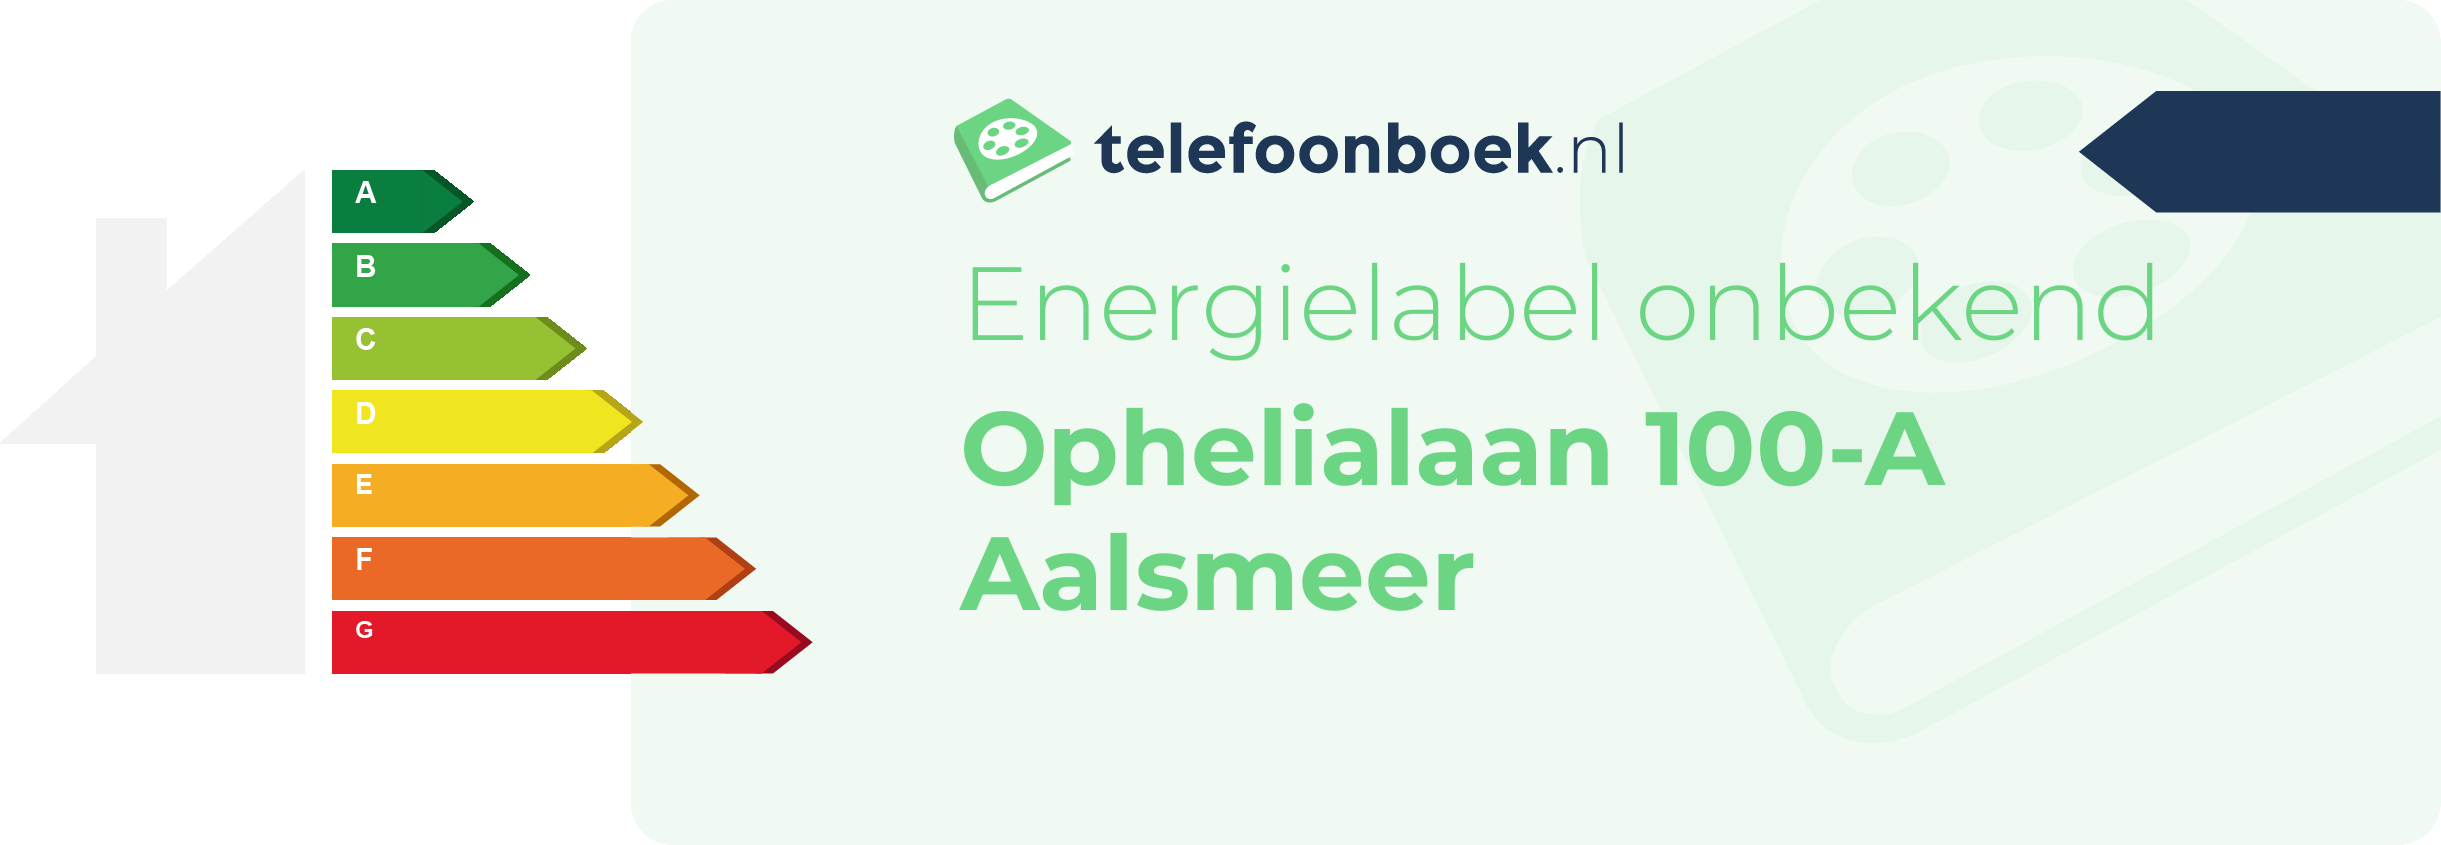 Energielabel Ophelialaan 100-A Aalsmeer